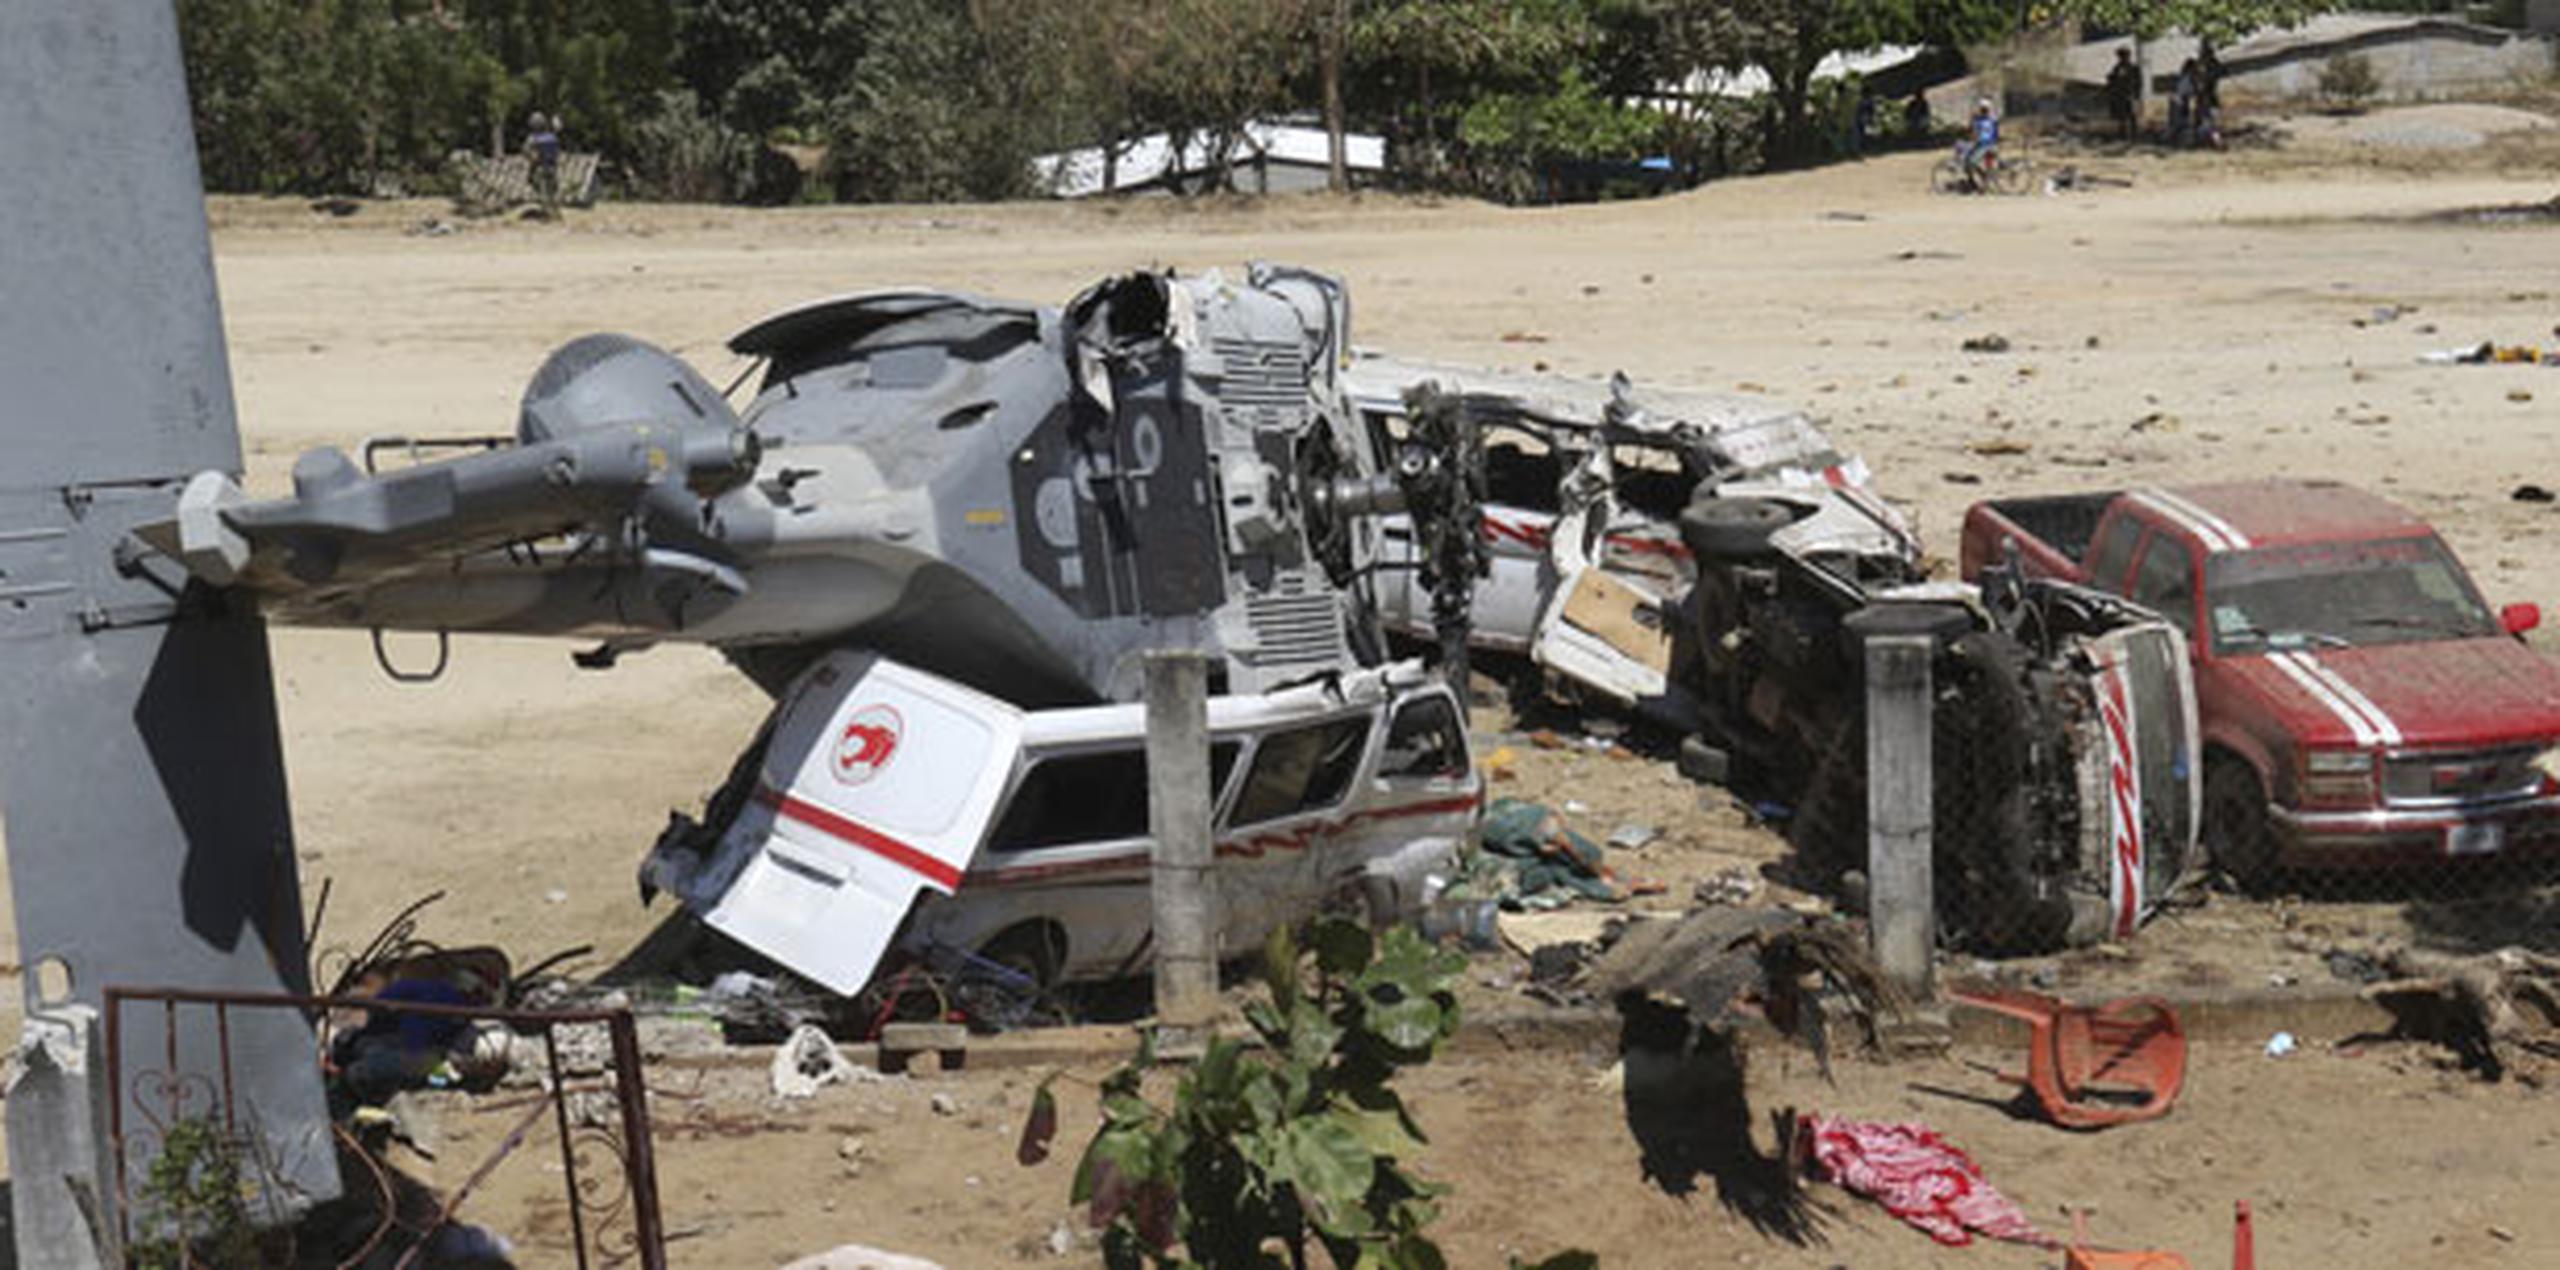 Unas 13 personas murieron al estrellarse un helicóptero enviado a evaluar los daños en Oaxaca el viernes. (AP)